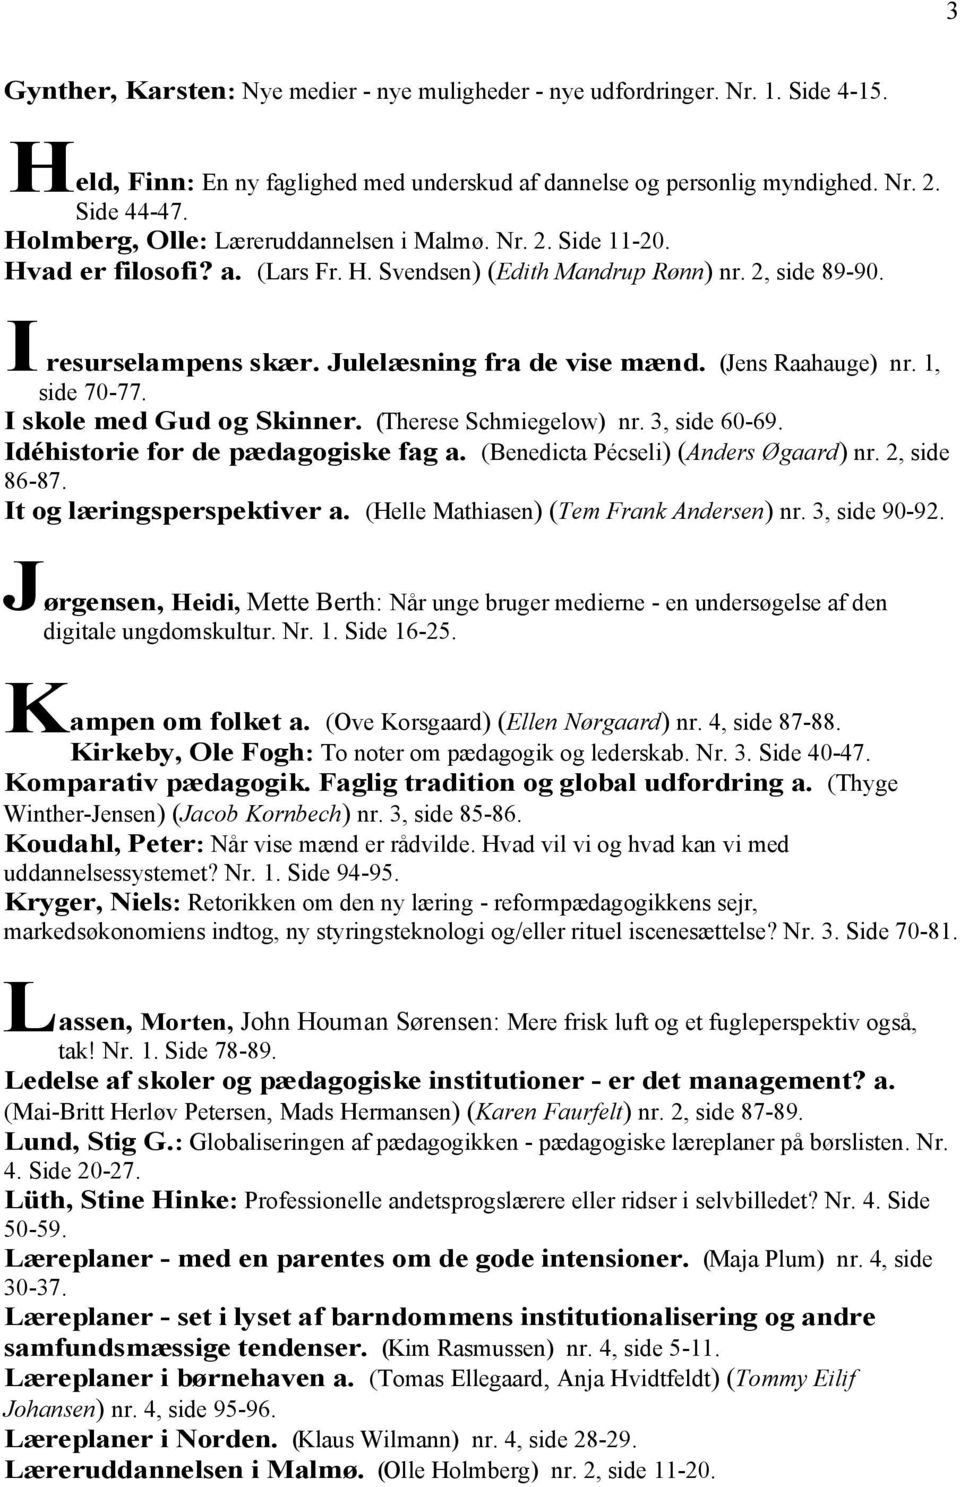 (Jens Raahauge) nr. 1, side 70-77. I skole med Gud og Skinner. (Therese Schmiegelow) nr. 3, side 60-69. Idéhistorie for de pædagogiske fag a. (Benedicta Pécseli) (Anders Øgaard) nr. 2, side 86-87.